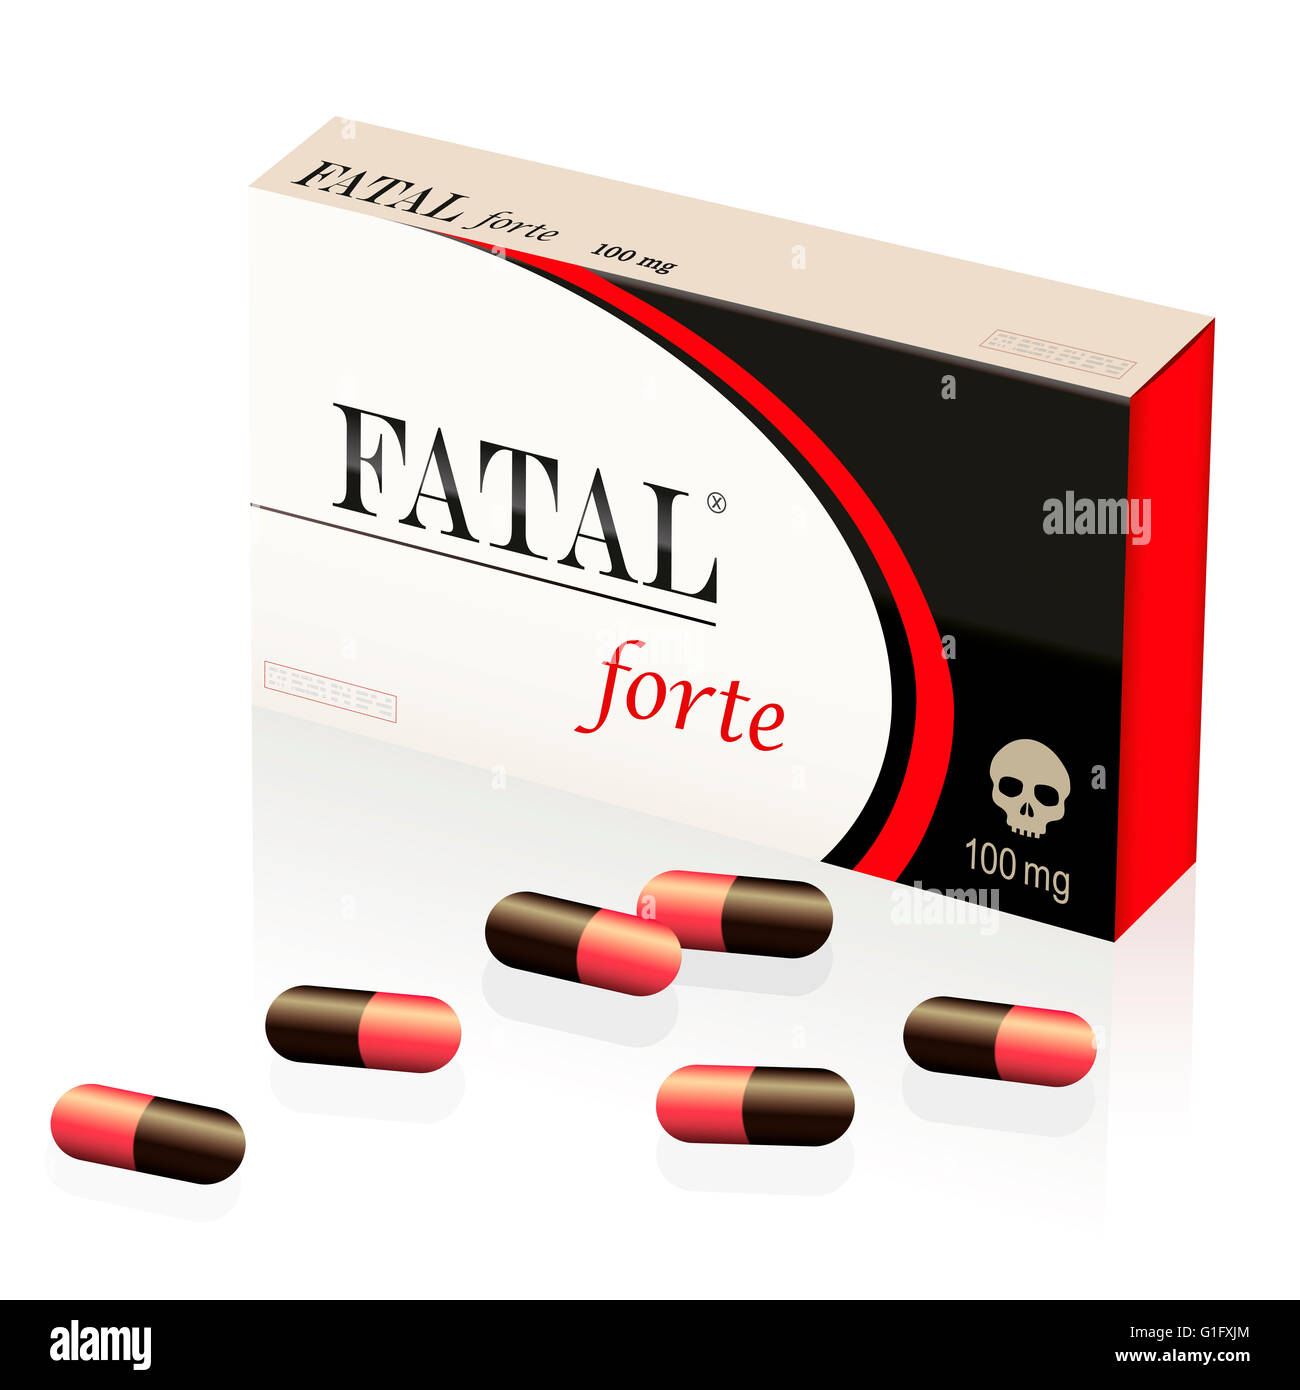 Tödlich, tödlichere, tödlichere Pillen, symbolisiert durch eine gefälschte Arzneimittel-Paket namens FATAL FORTE mit einem Totenkopf als Markenlogo drauf. Stockfoto